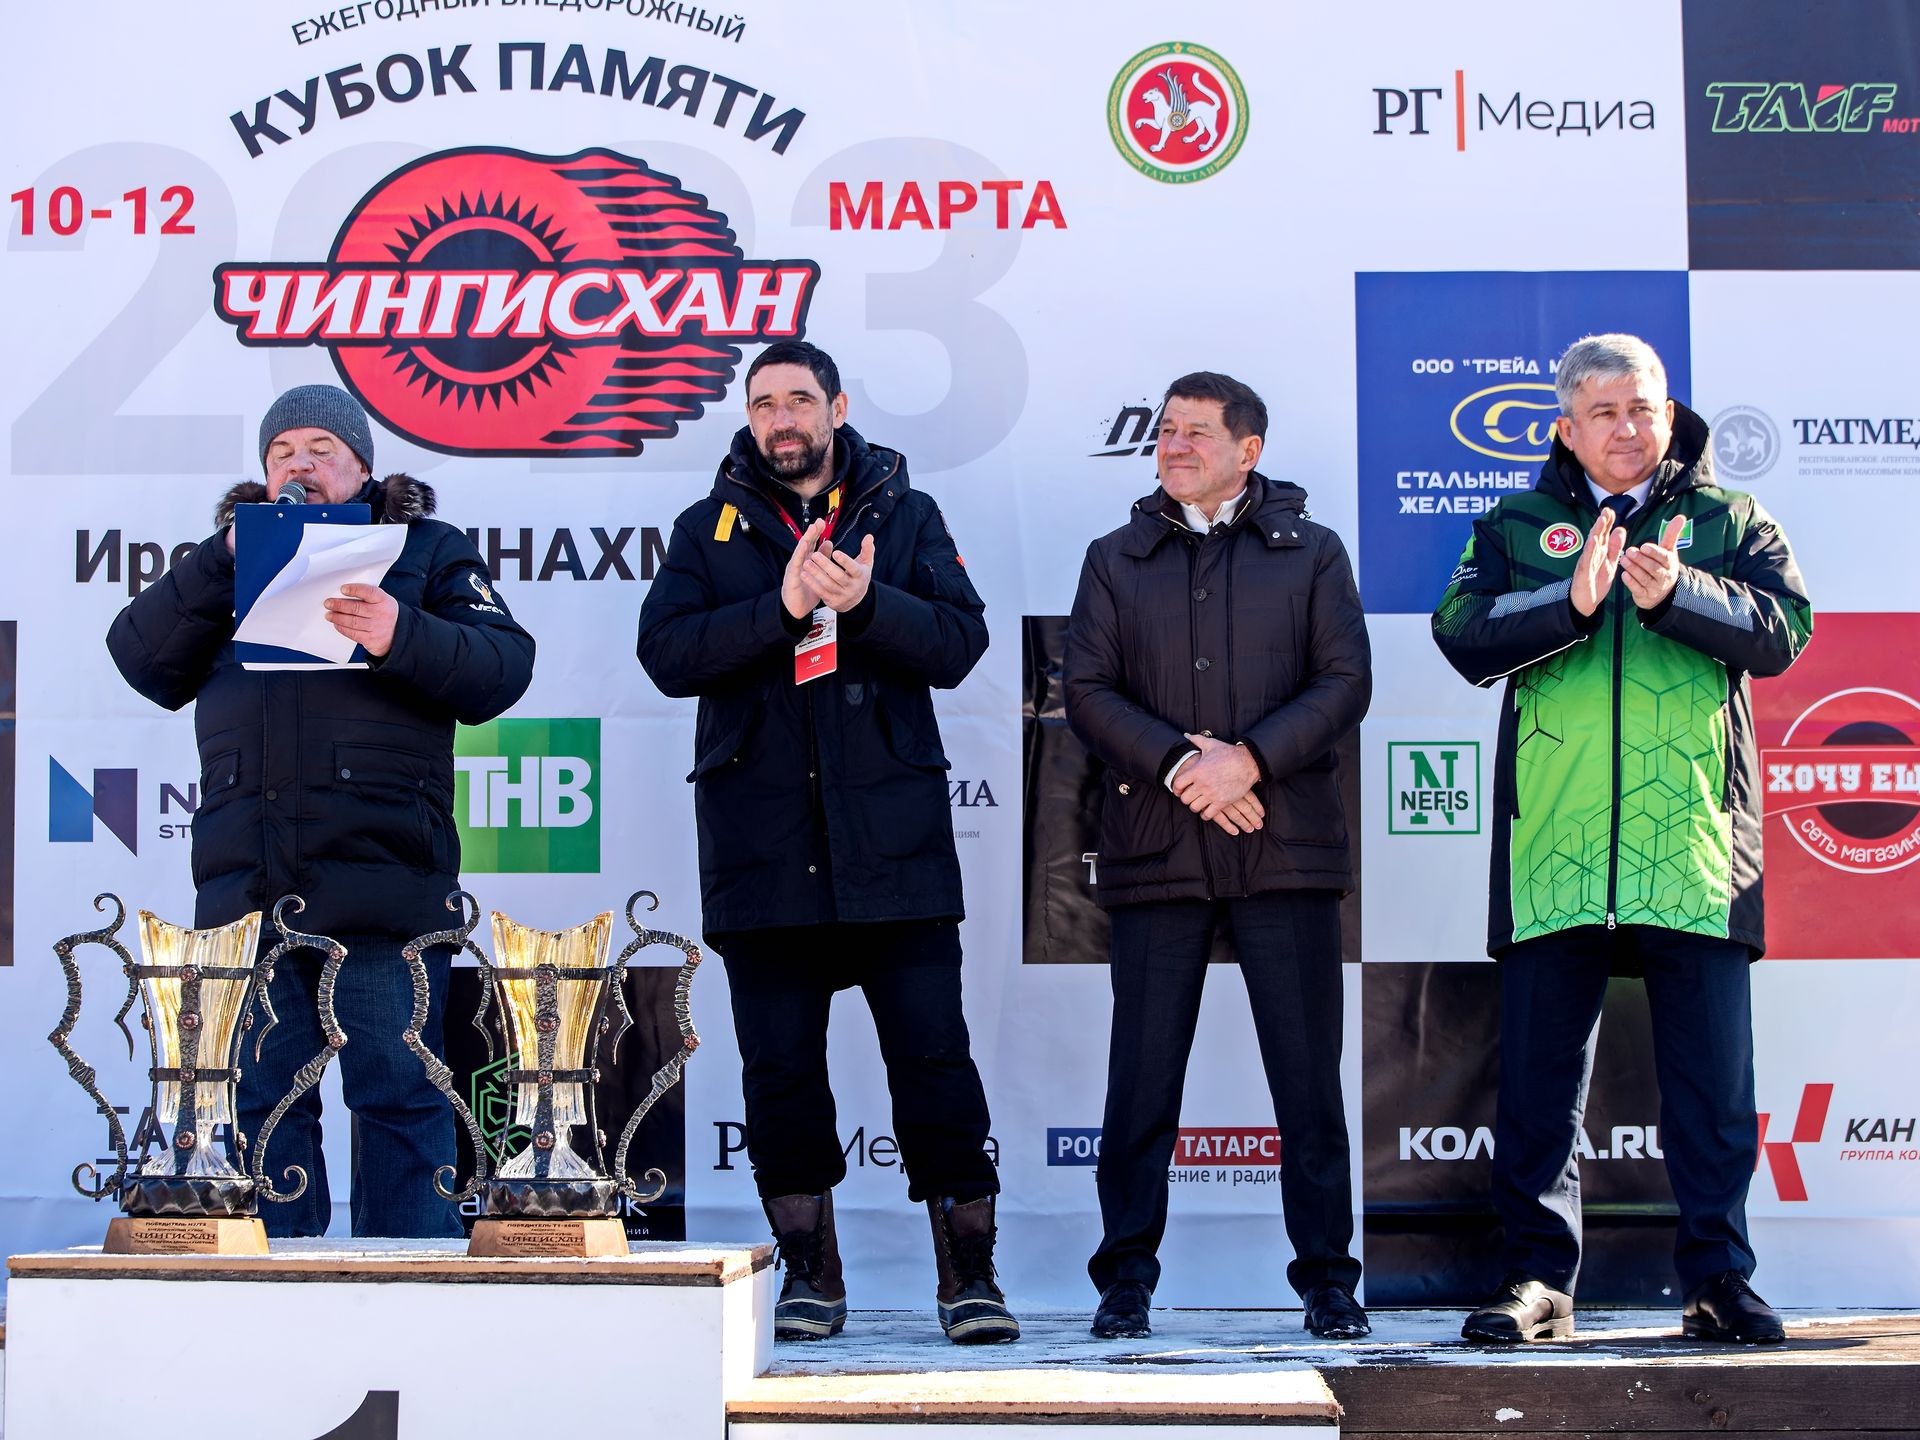 Главный трофей Кубка «Чингисхан» уезжает в Пермский край. День первый – автокросс